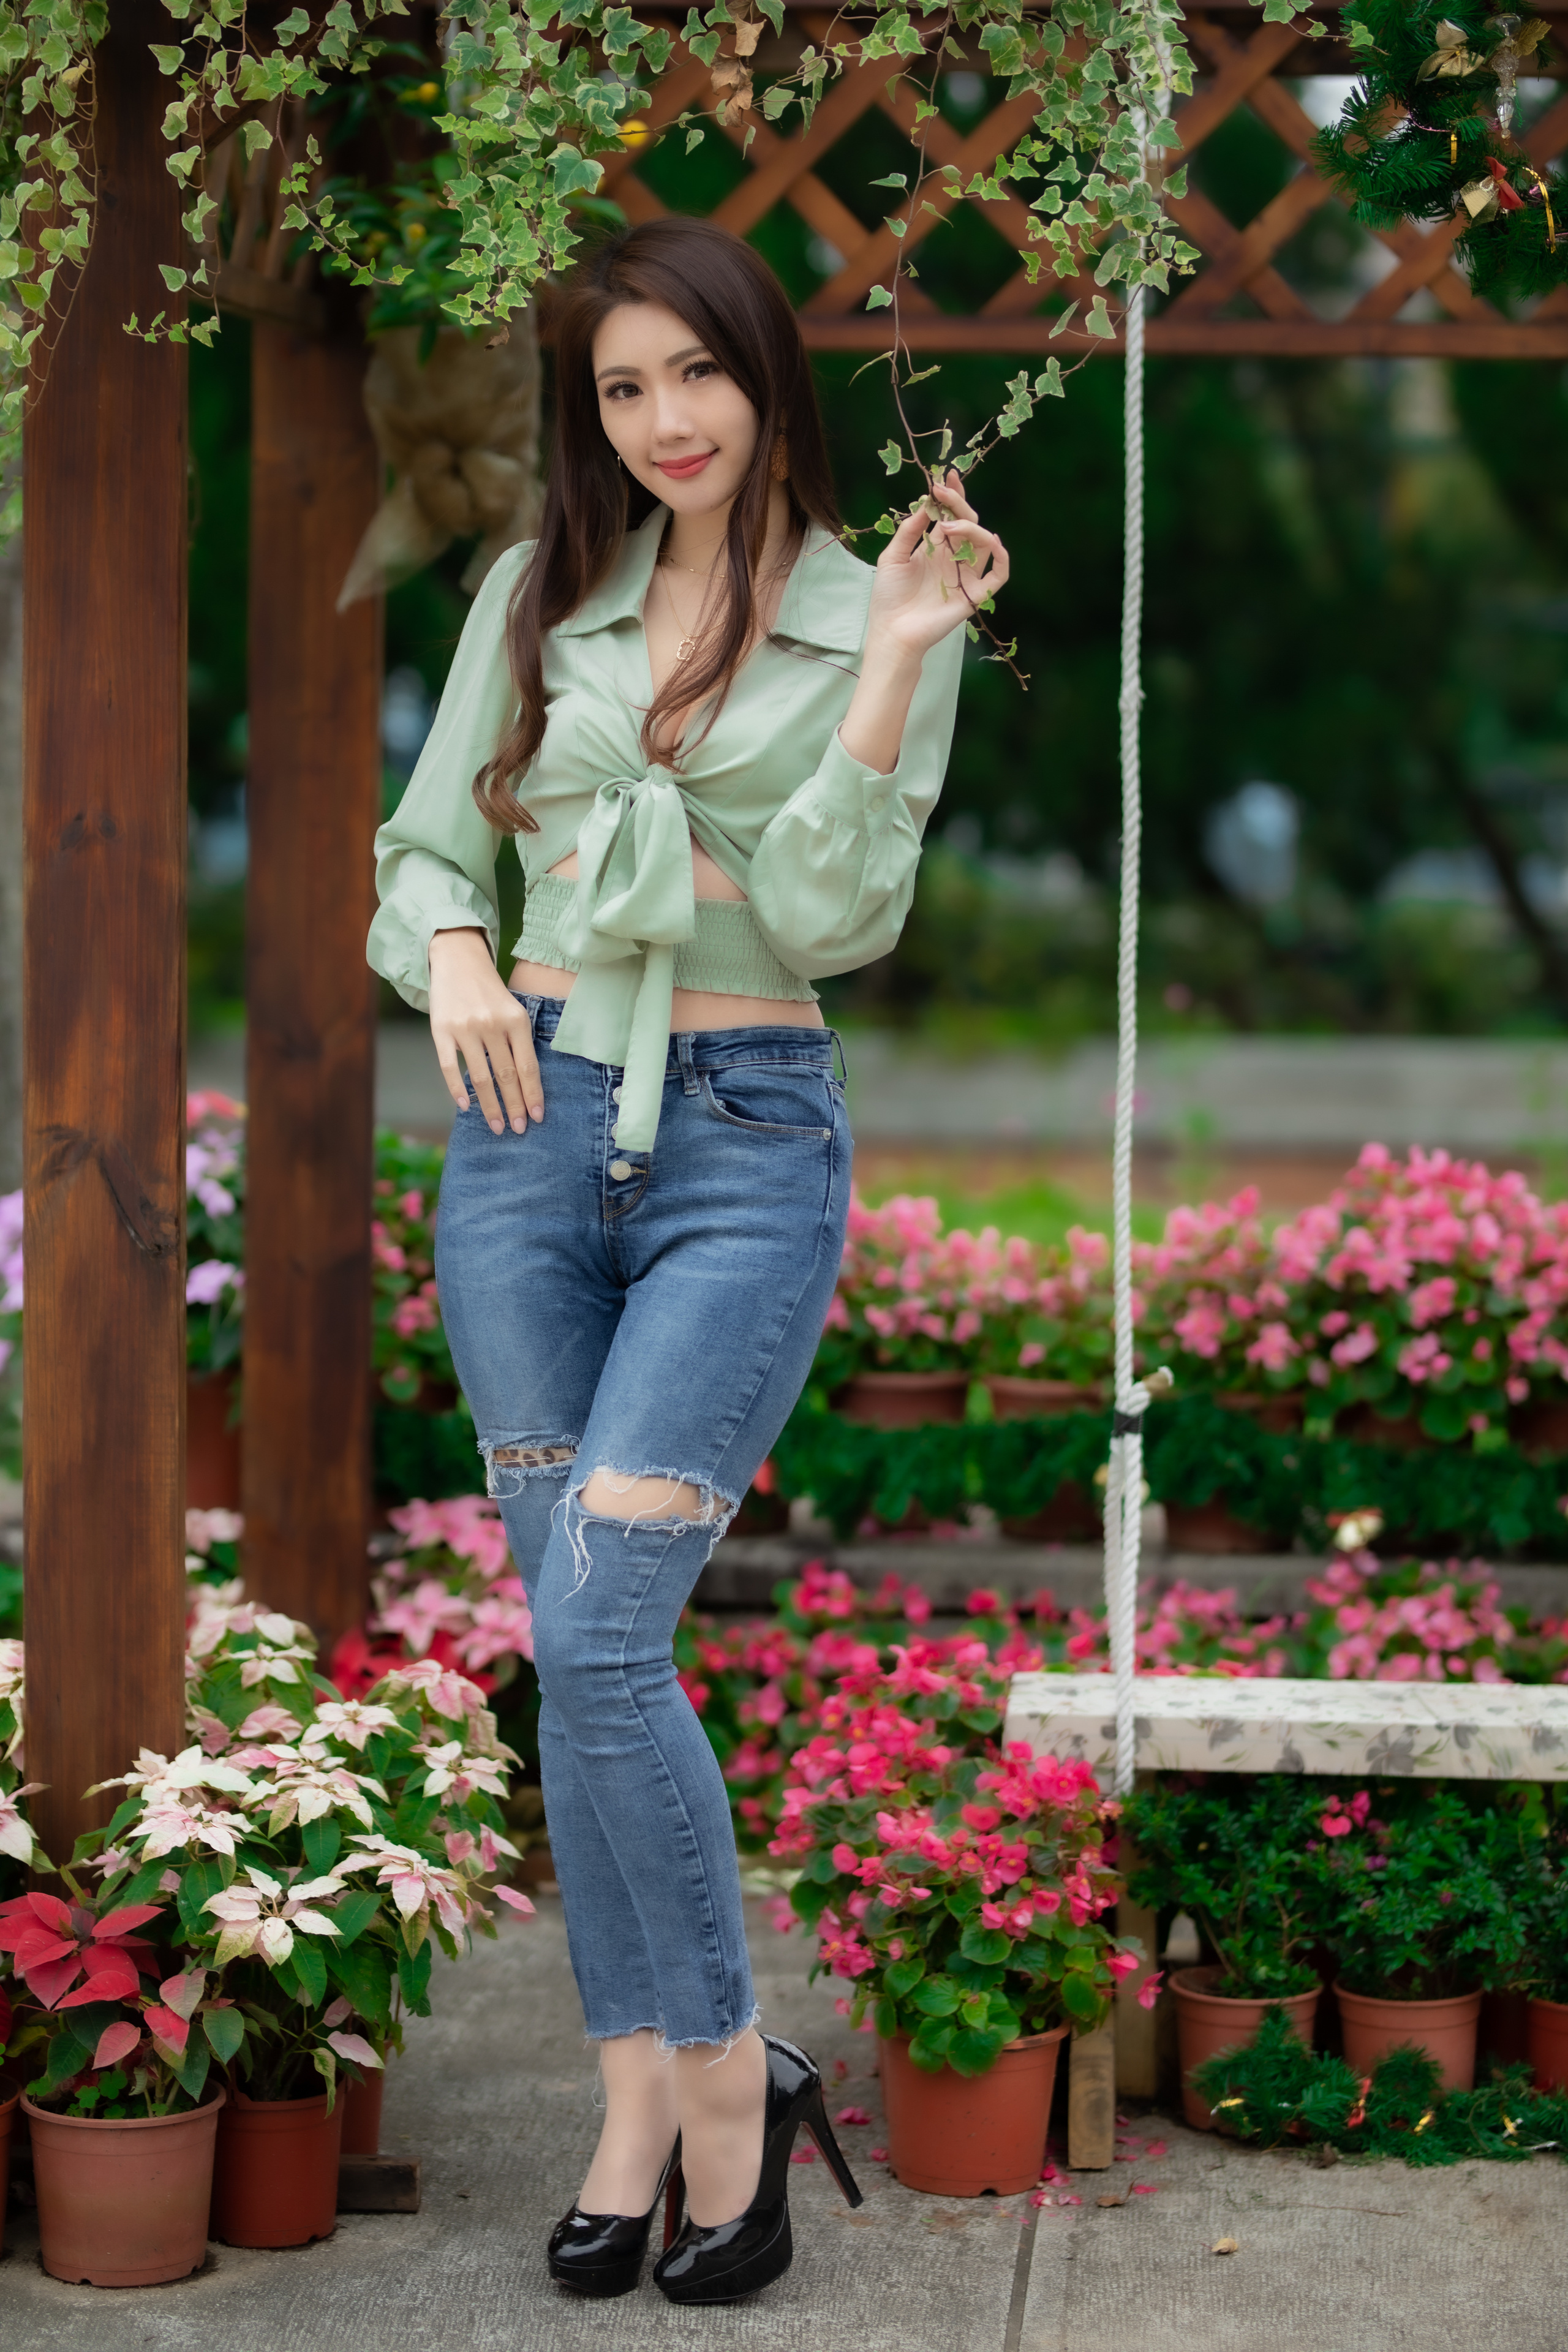 People 2560x3840 Asian model women women outdoors long hair brunette depth of field jeans blouses earring black high-heels flowerpot flowers swings bushes trees necklace